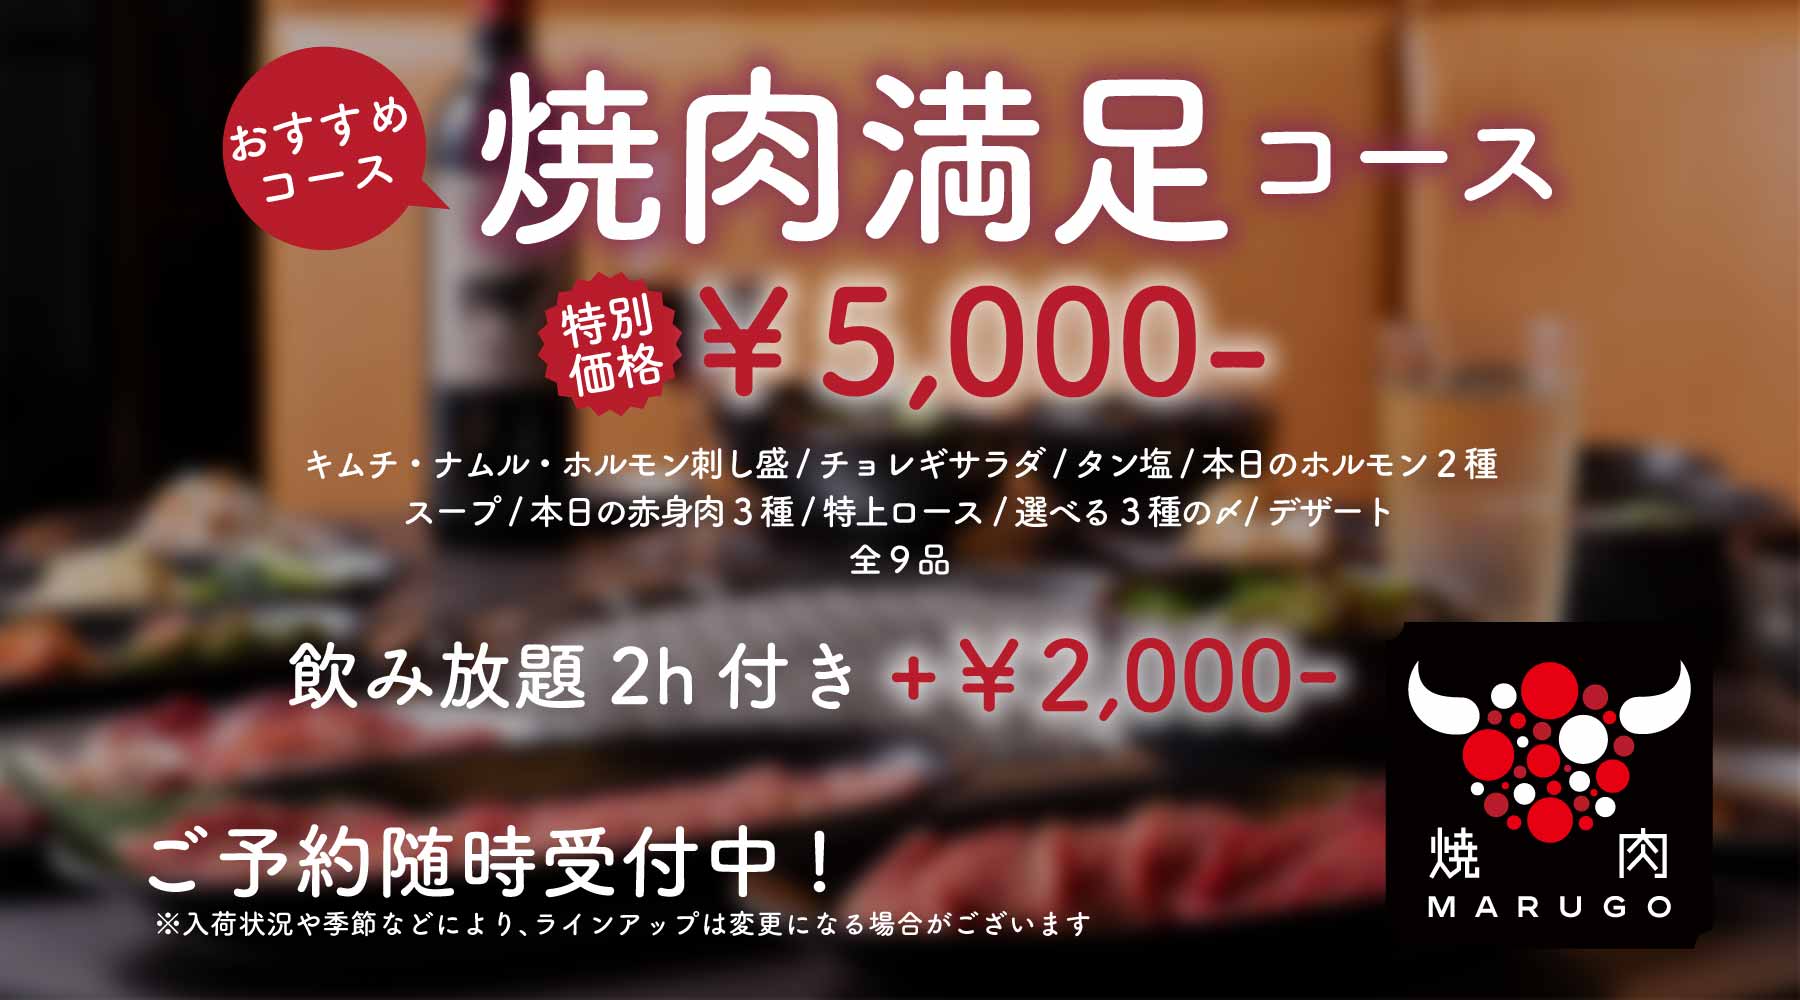 おすすめ「焼肉満足コース」¥5,000-